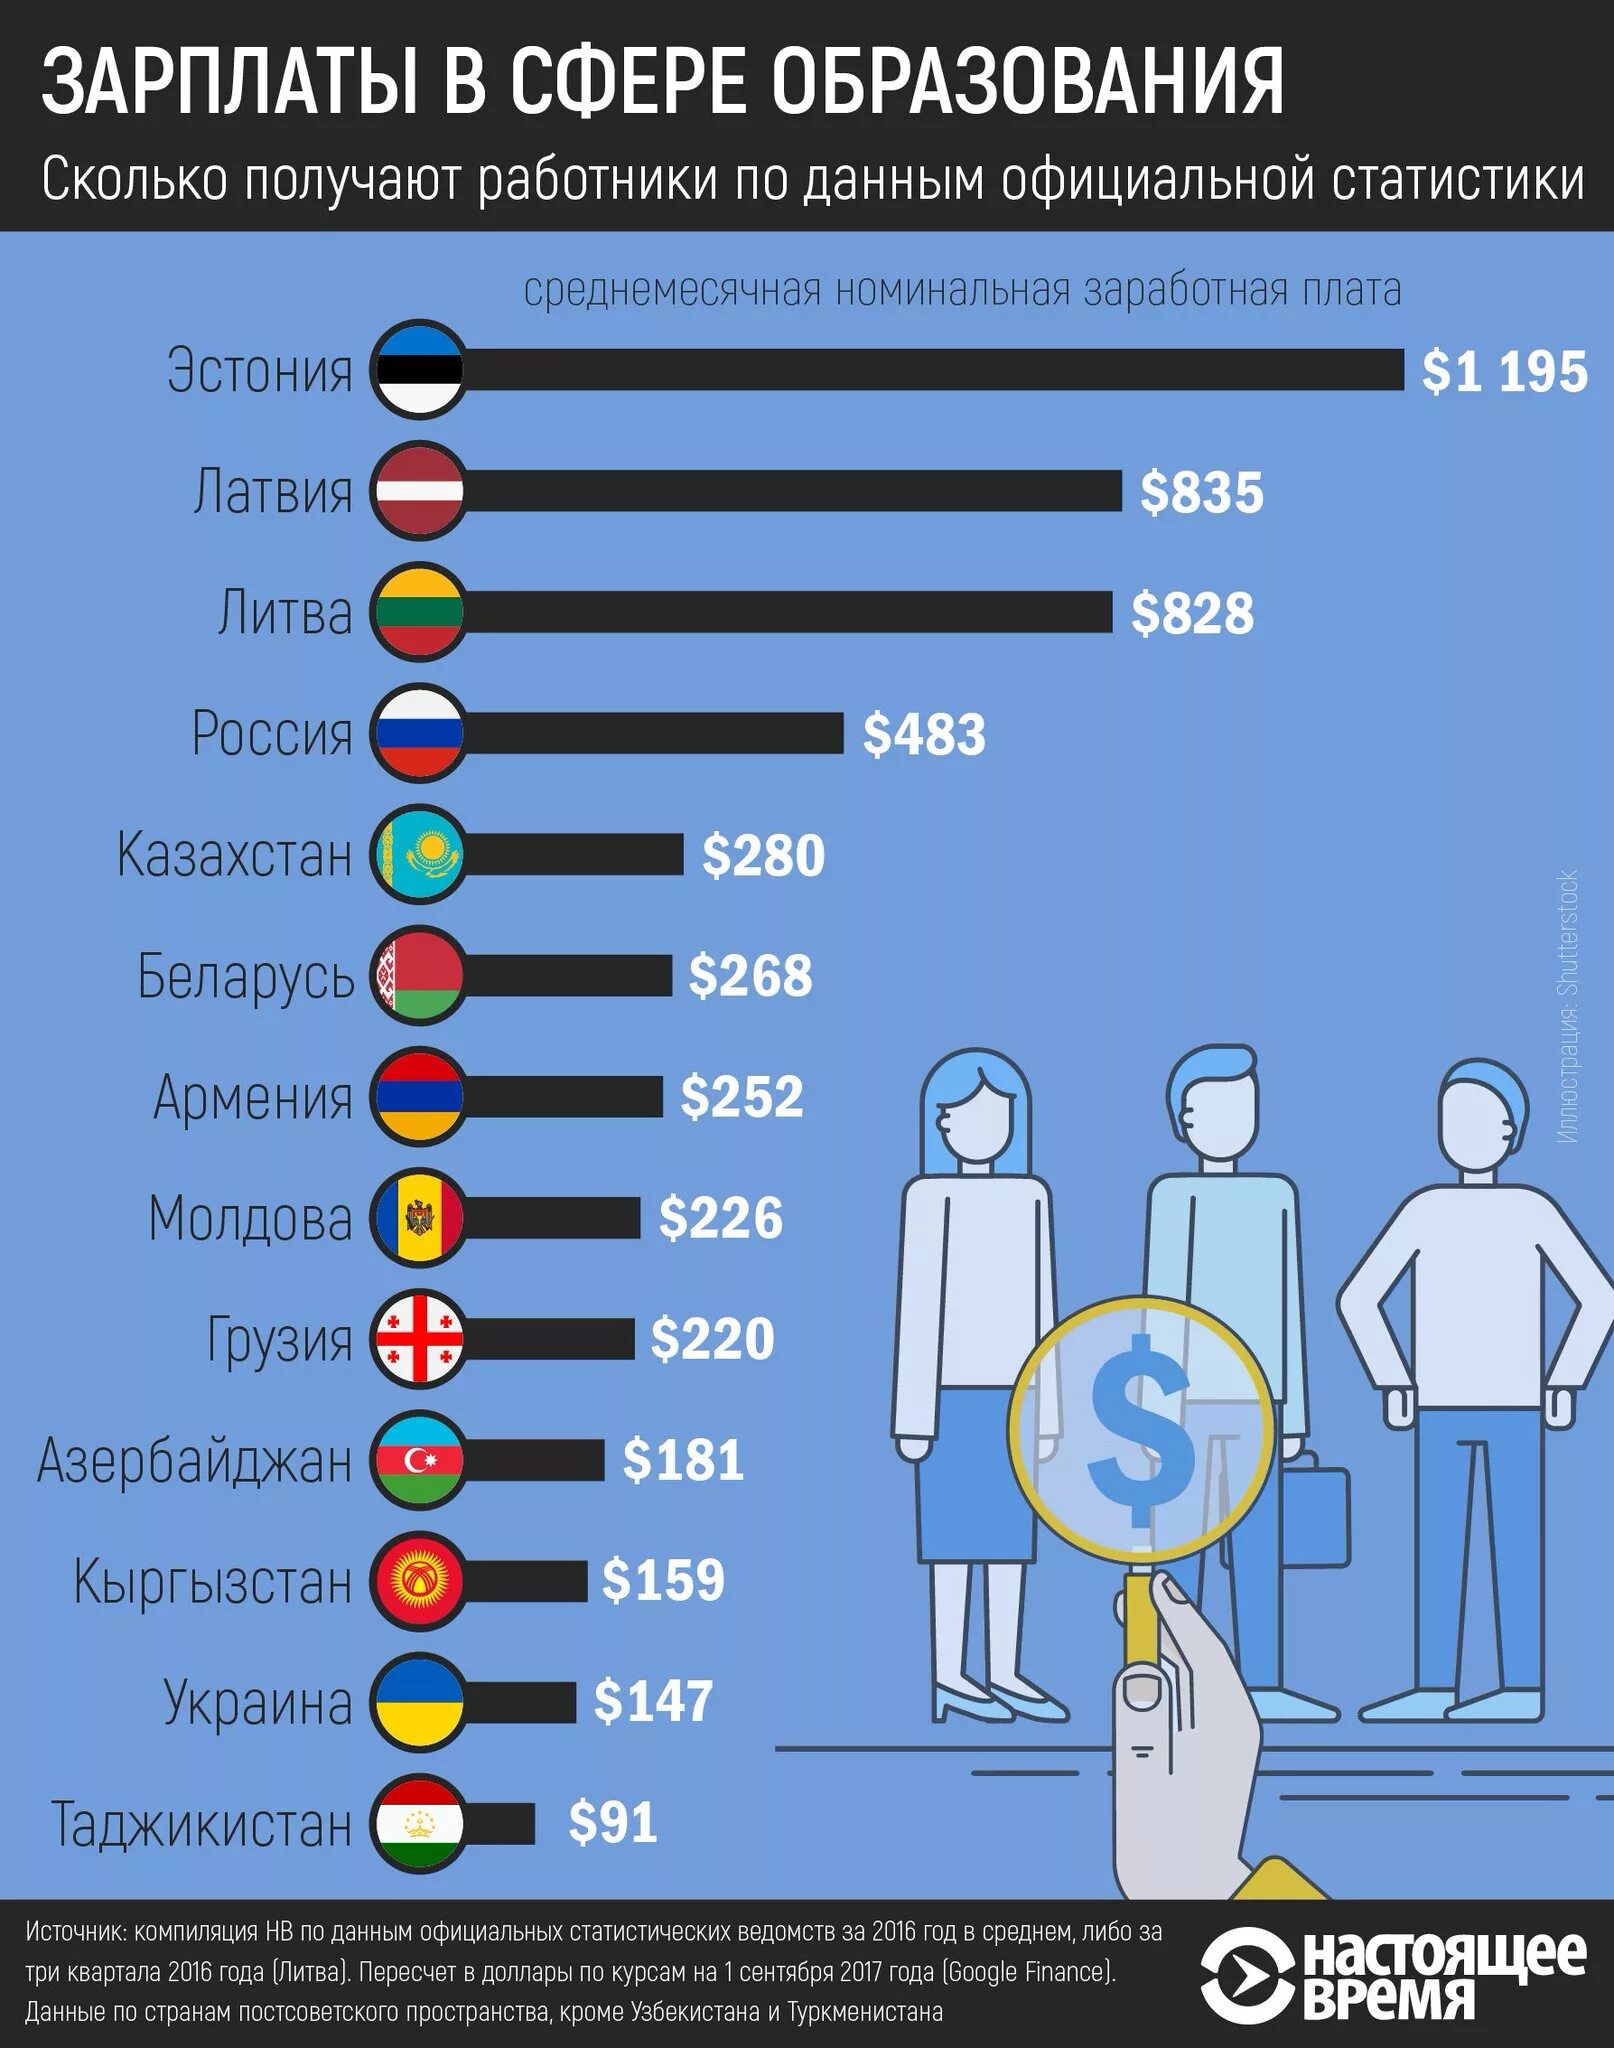 Заработная плата. Эстония средняя заработная плата. Эстония зарплаты. Человек с зарплатой. З п образование